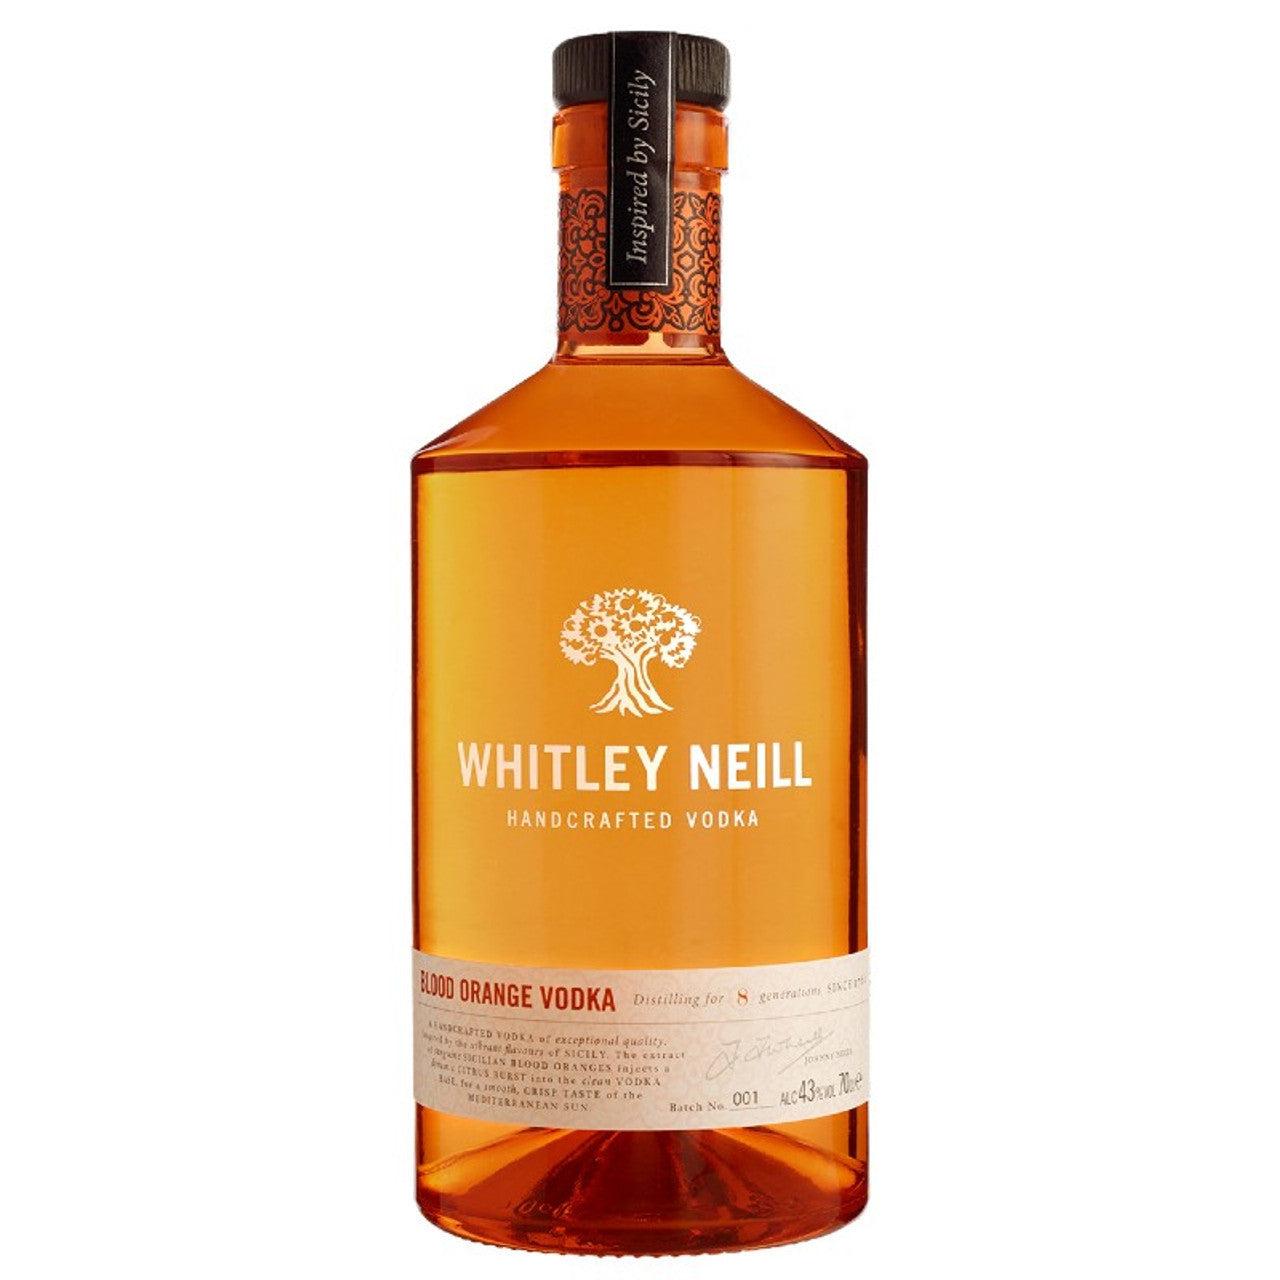 Whitley Neill Blood Orange Gin 700ml